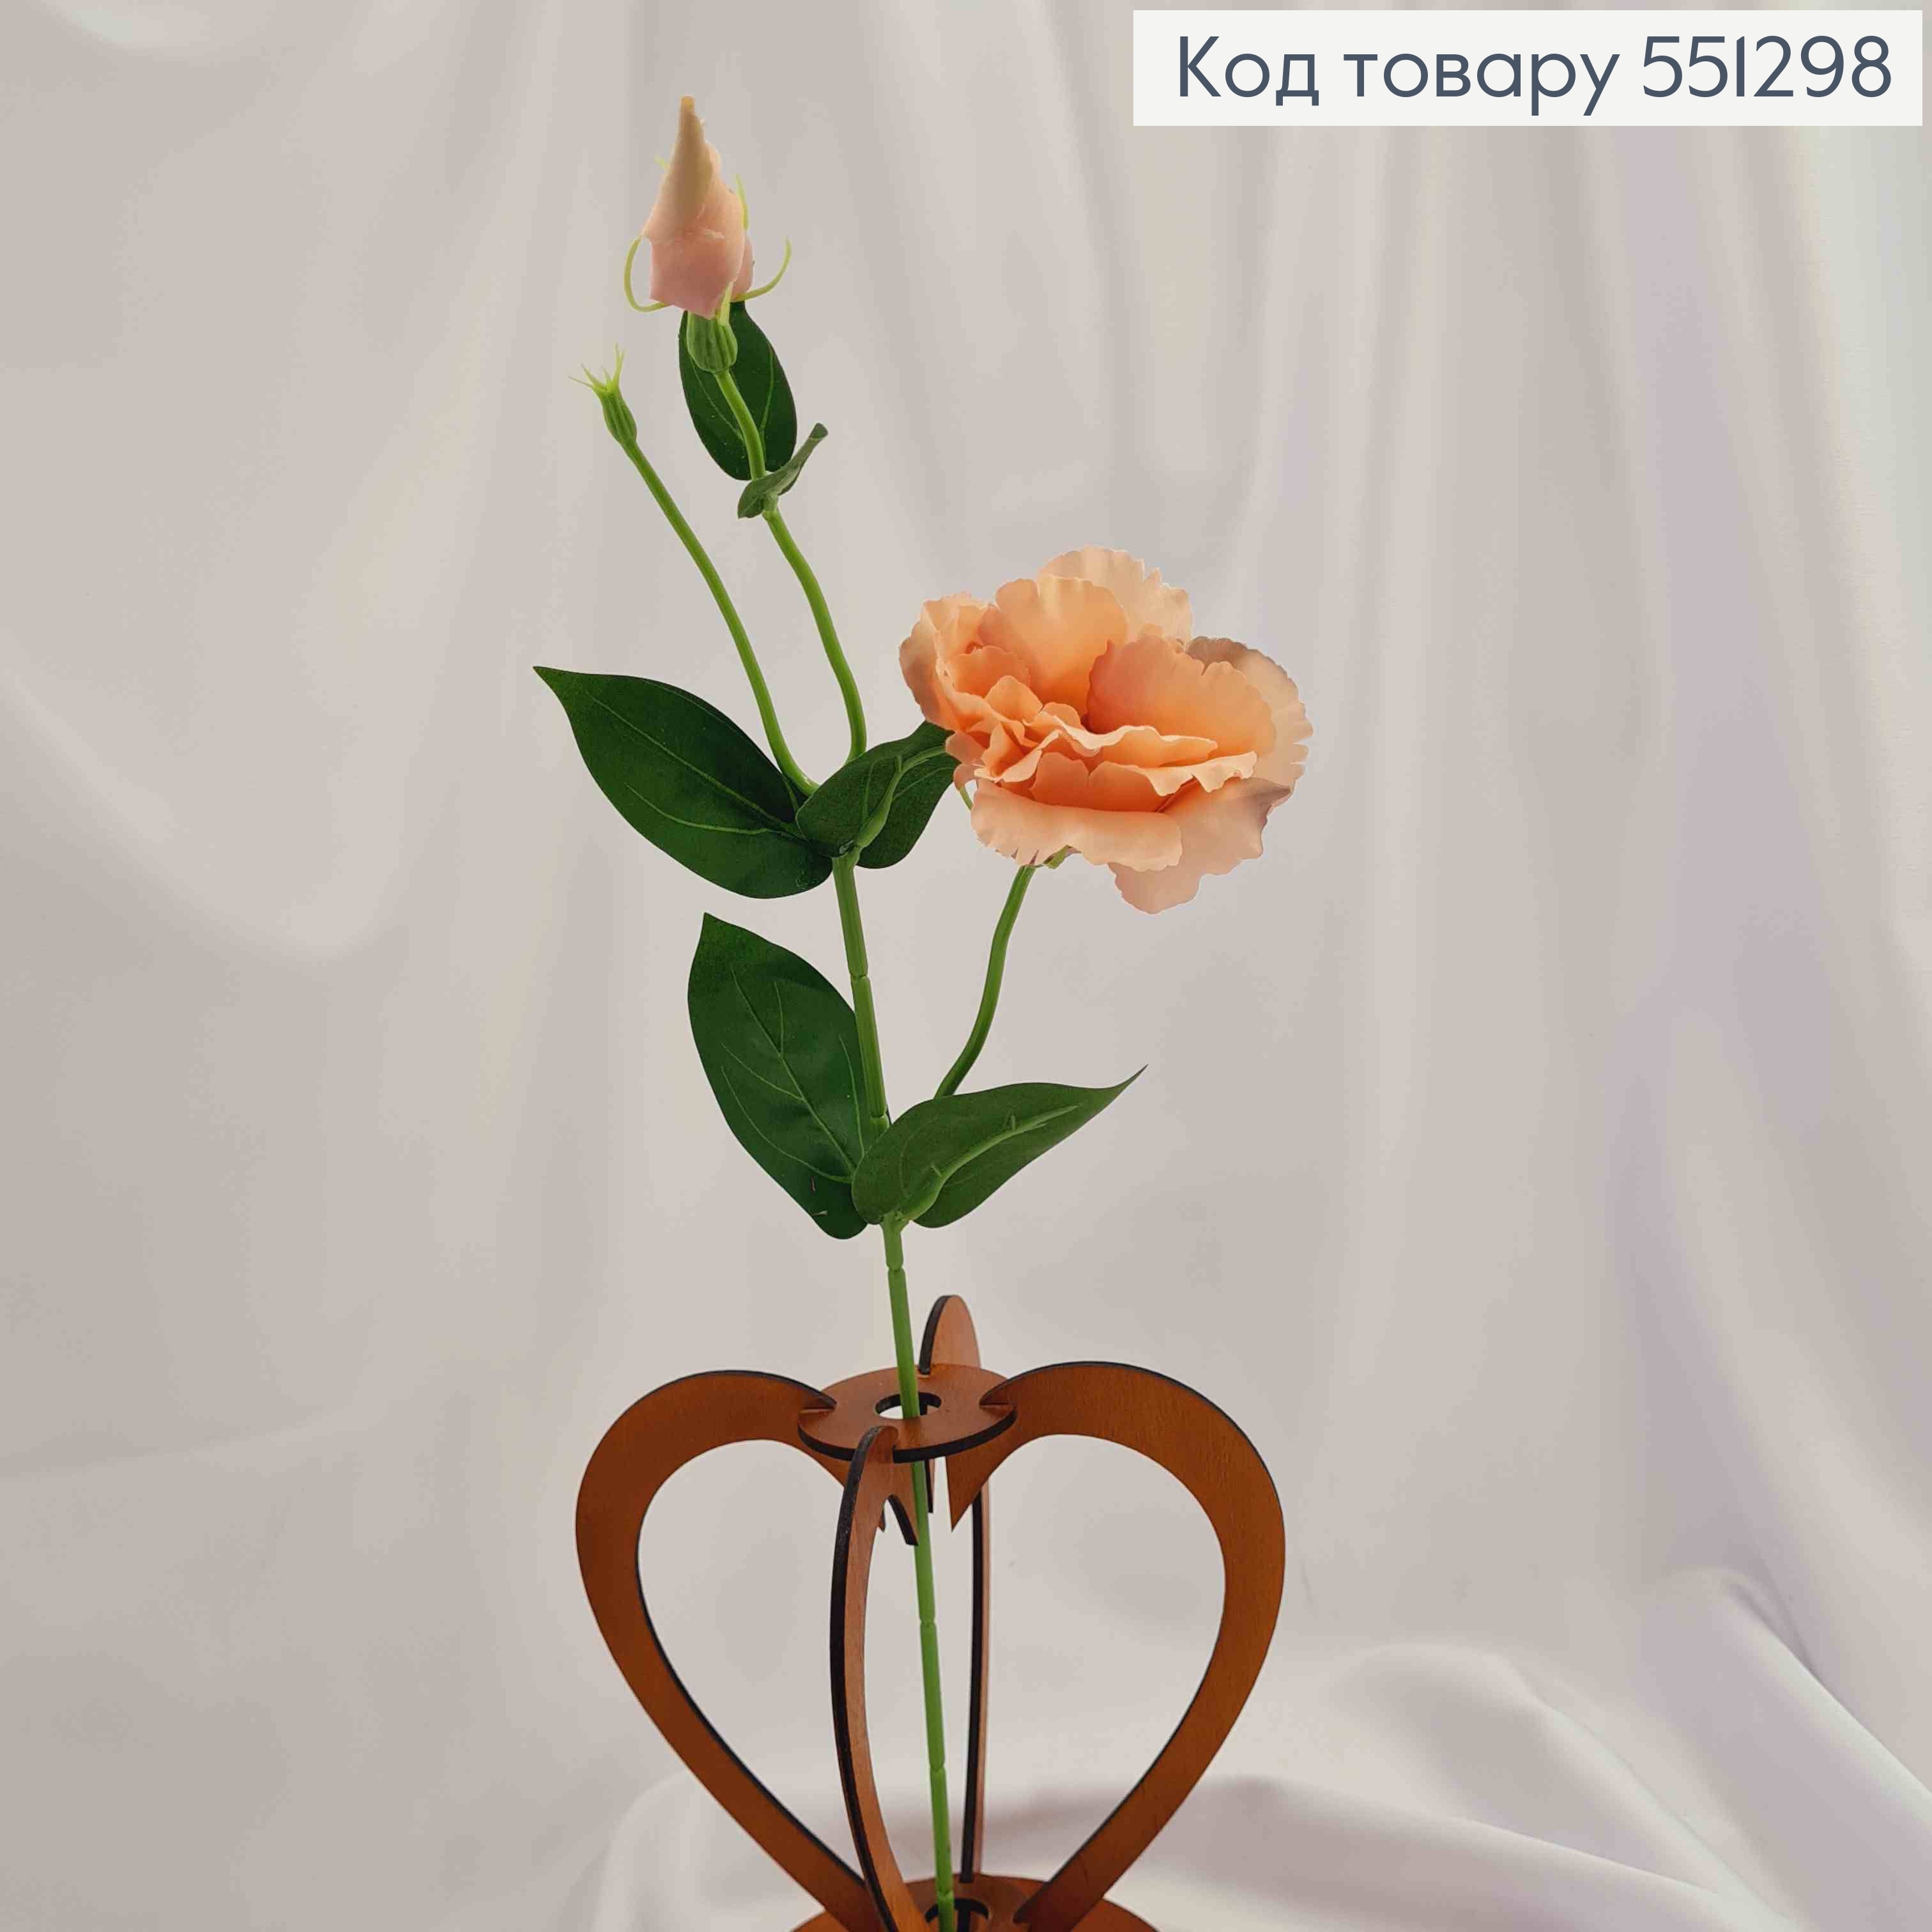 Штучні квіти, гілочка Еустоми , ПУДРОВОГО  кольору, 1 квітка + 1 бутон, на металевому стержні, 47см 551298 фото 2